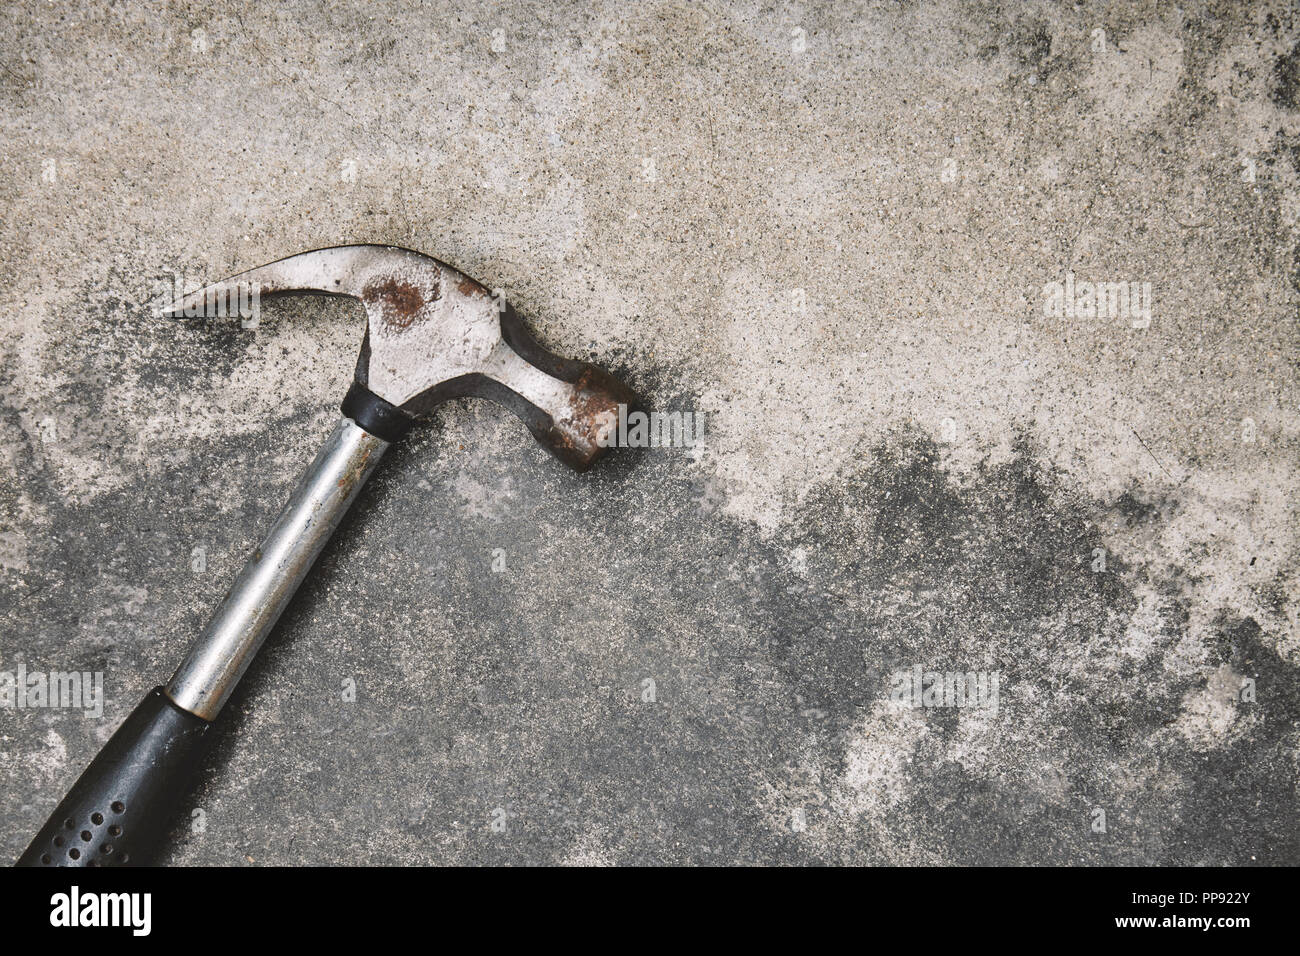 Inicio herramientas de trabajo para reparar, antiguo martillo de acero con óxido en polvo fondo de cemento con espacio de copia Foto de stock